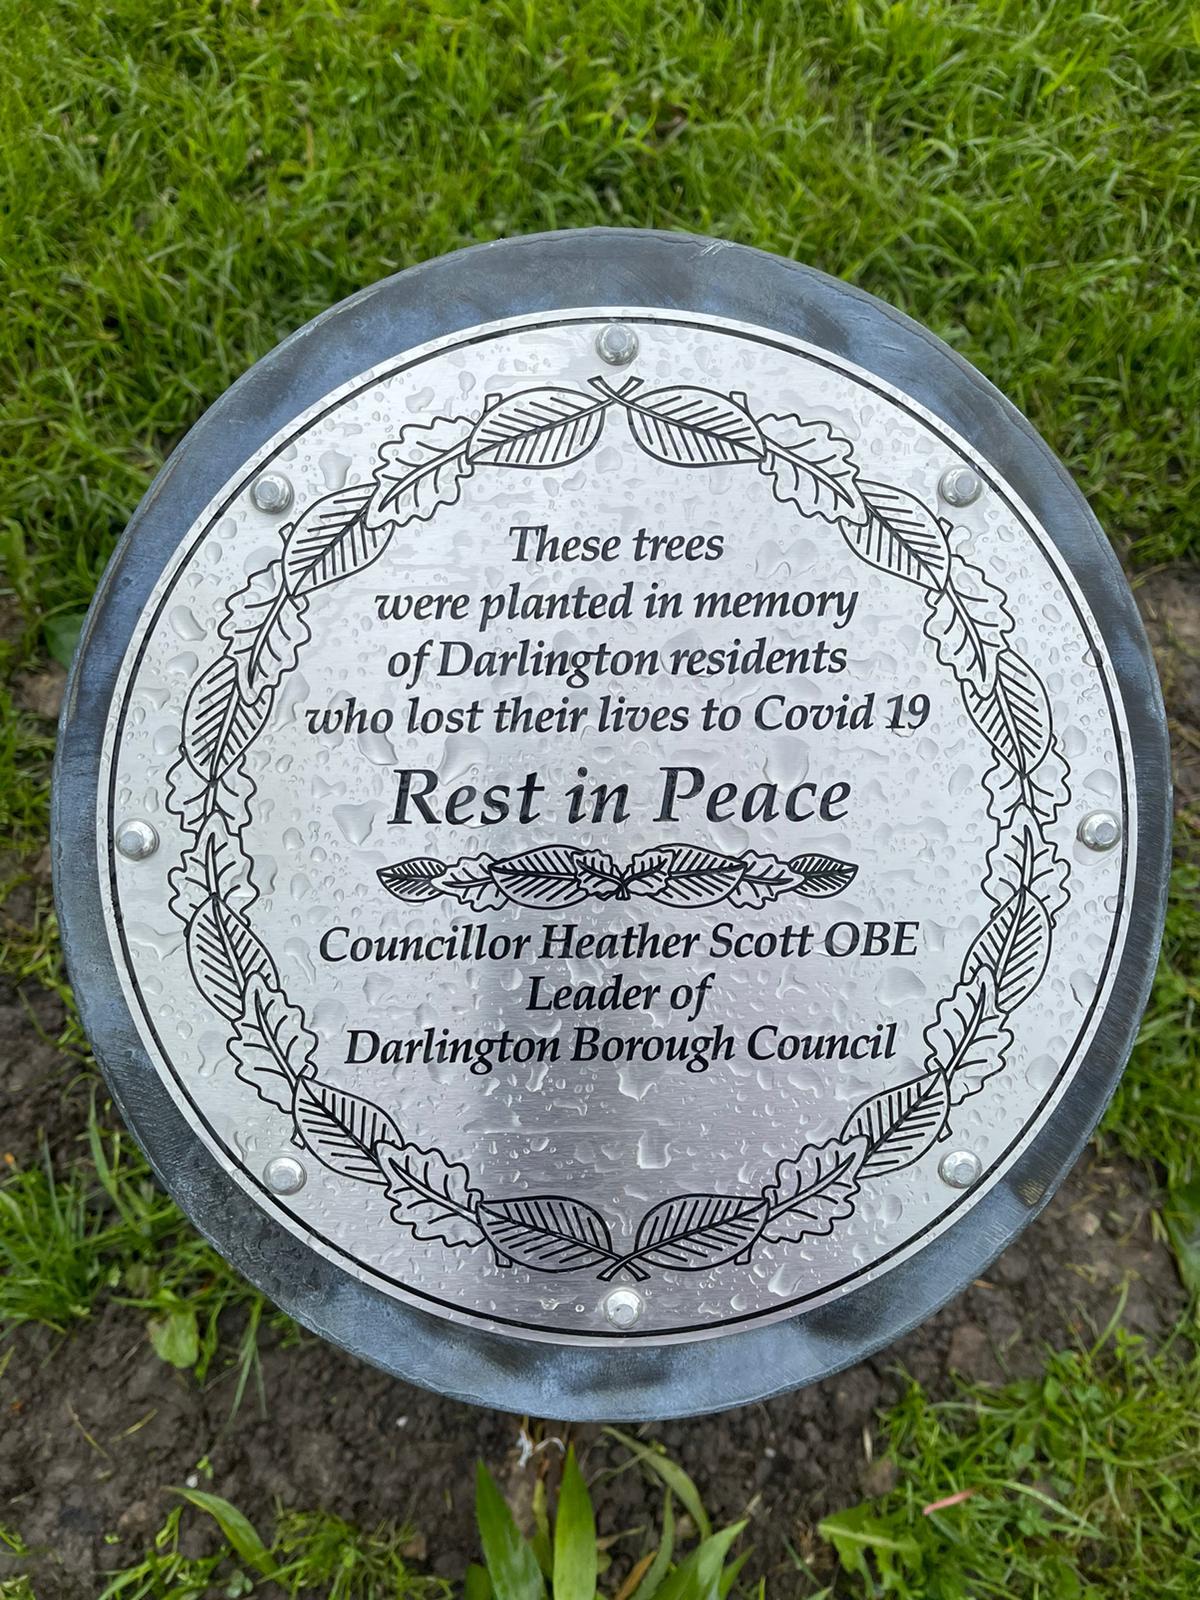 The plaque in Springfield Park Picture: SARAH CALDECOTT